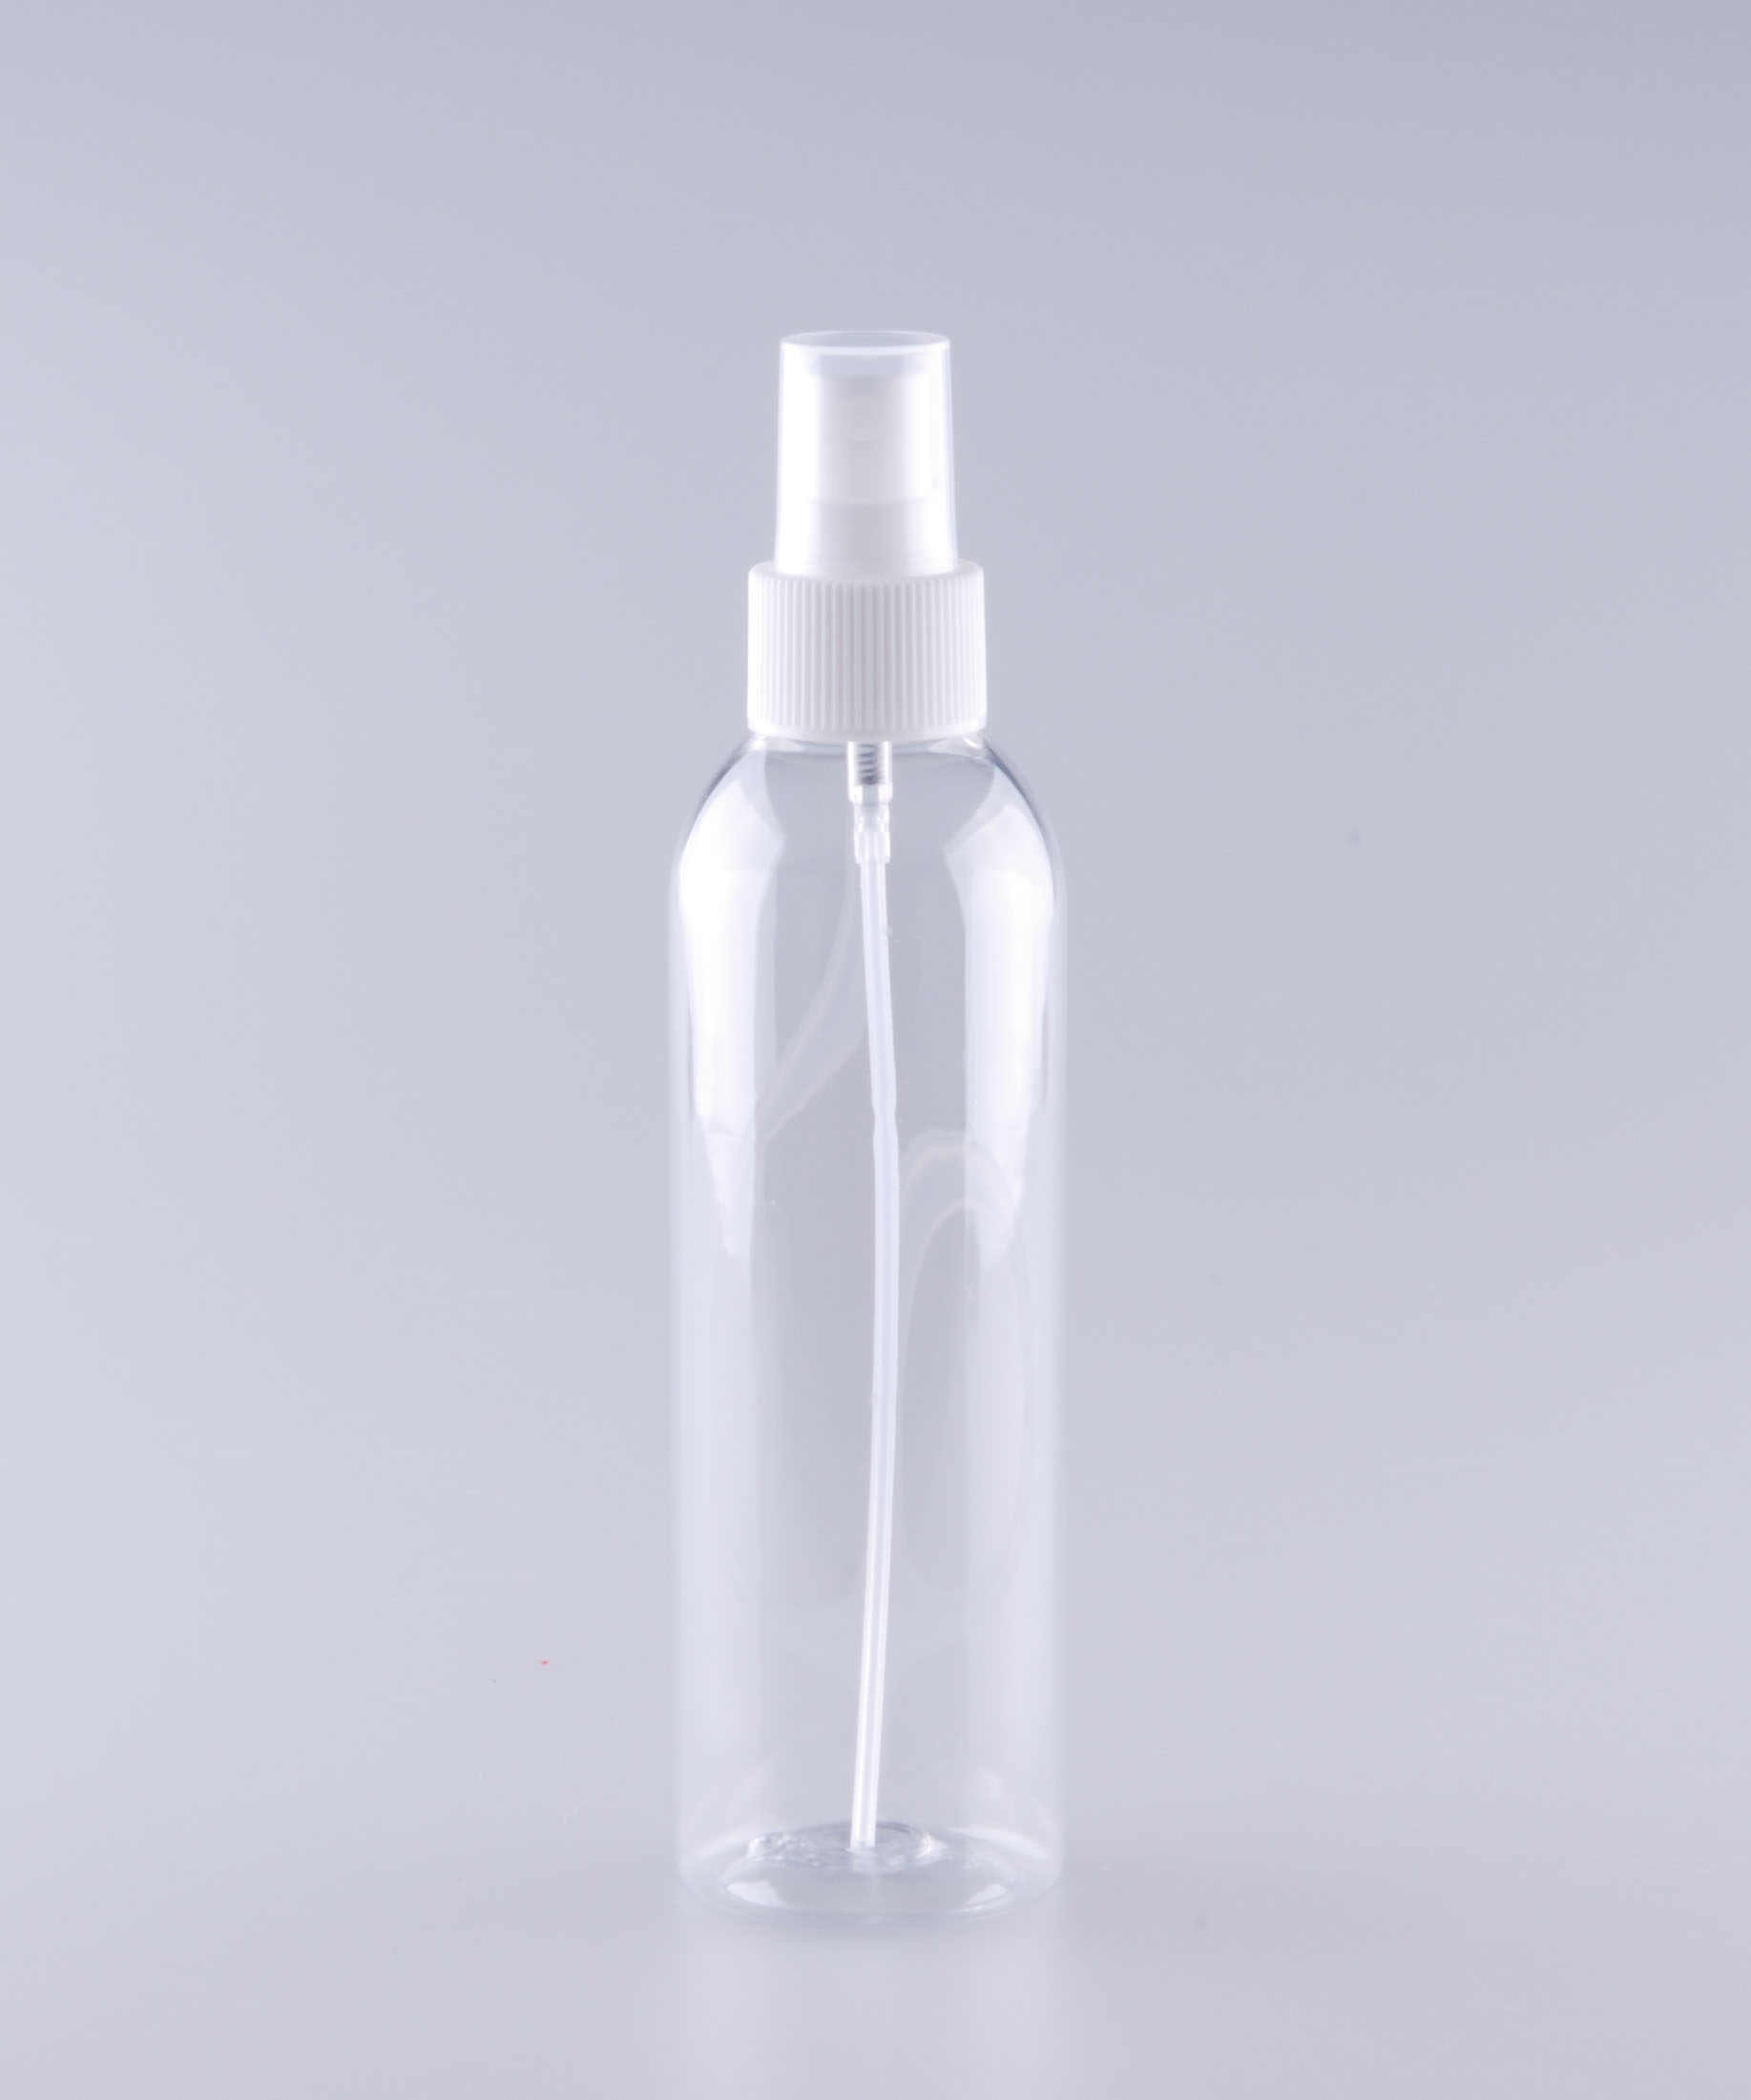 塑料瓶 空瓶 塑料现货200ml喷瓶 喷雾器 PET瓶产品图